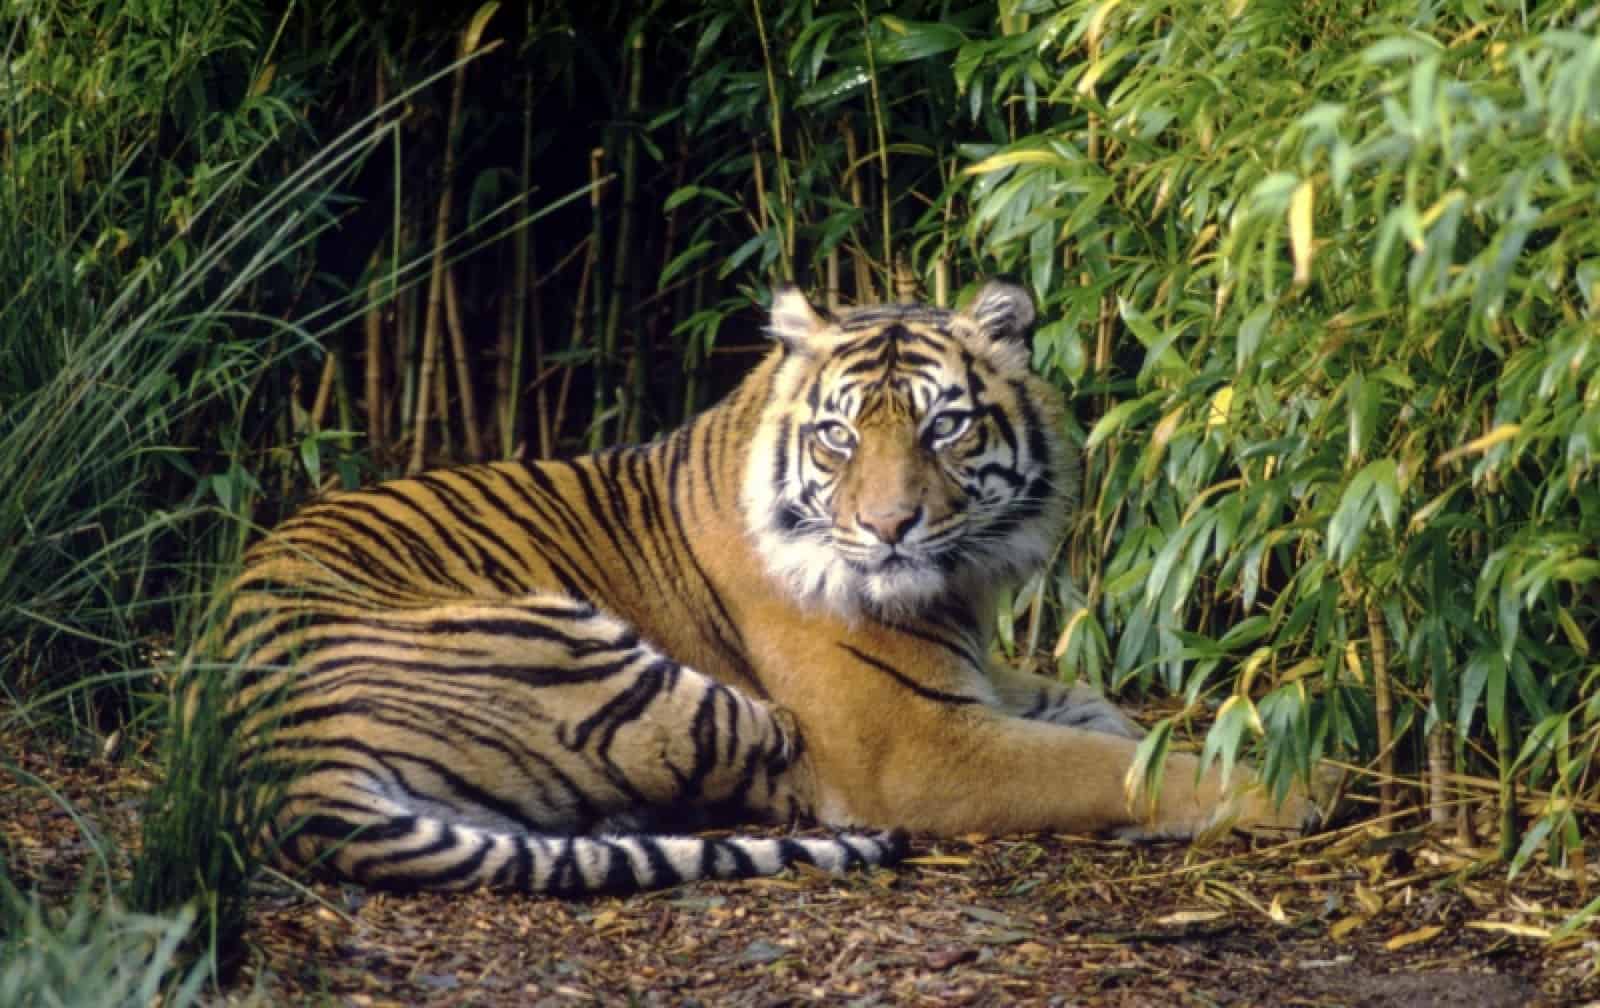 Sumatra Tiger, © by Fredy Mercady/WWF